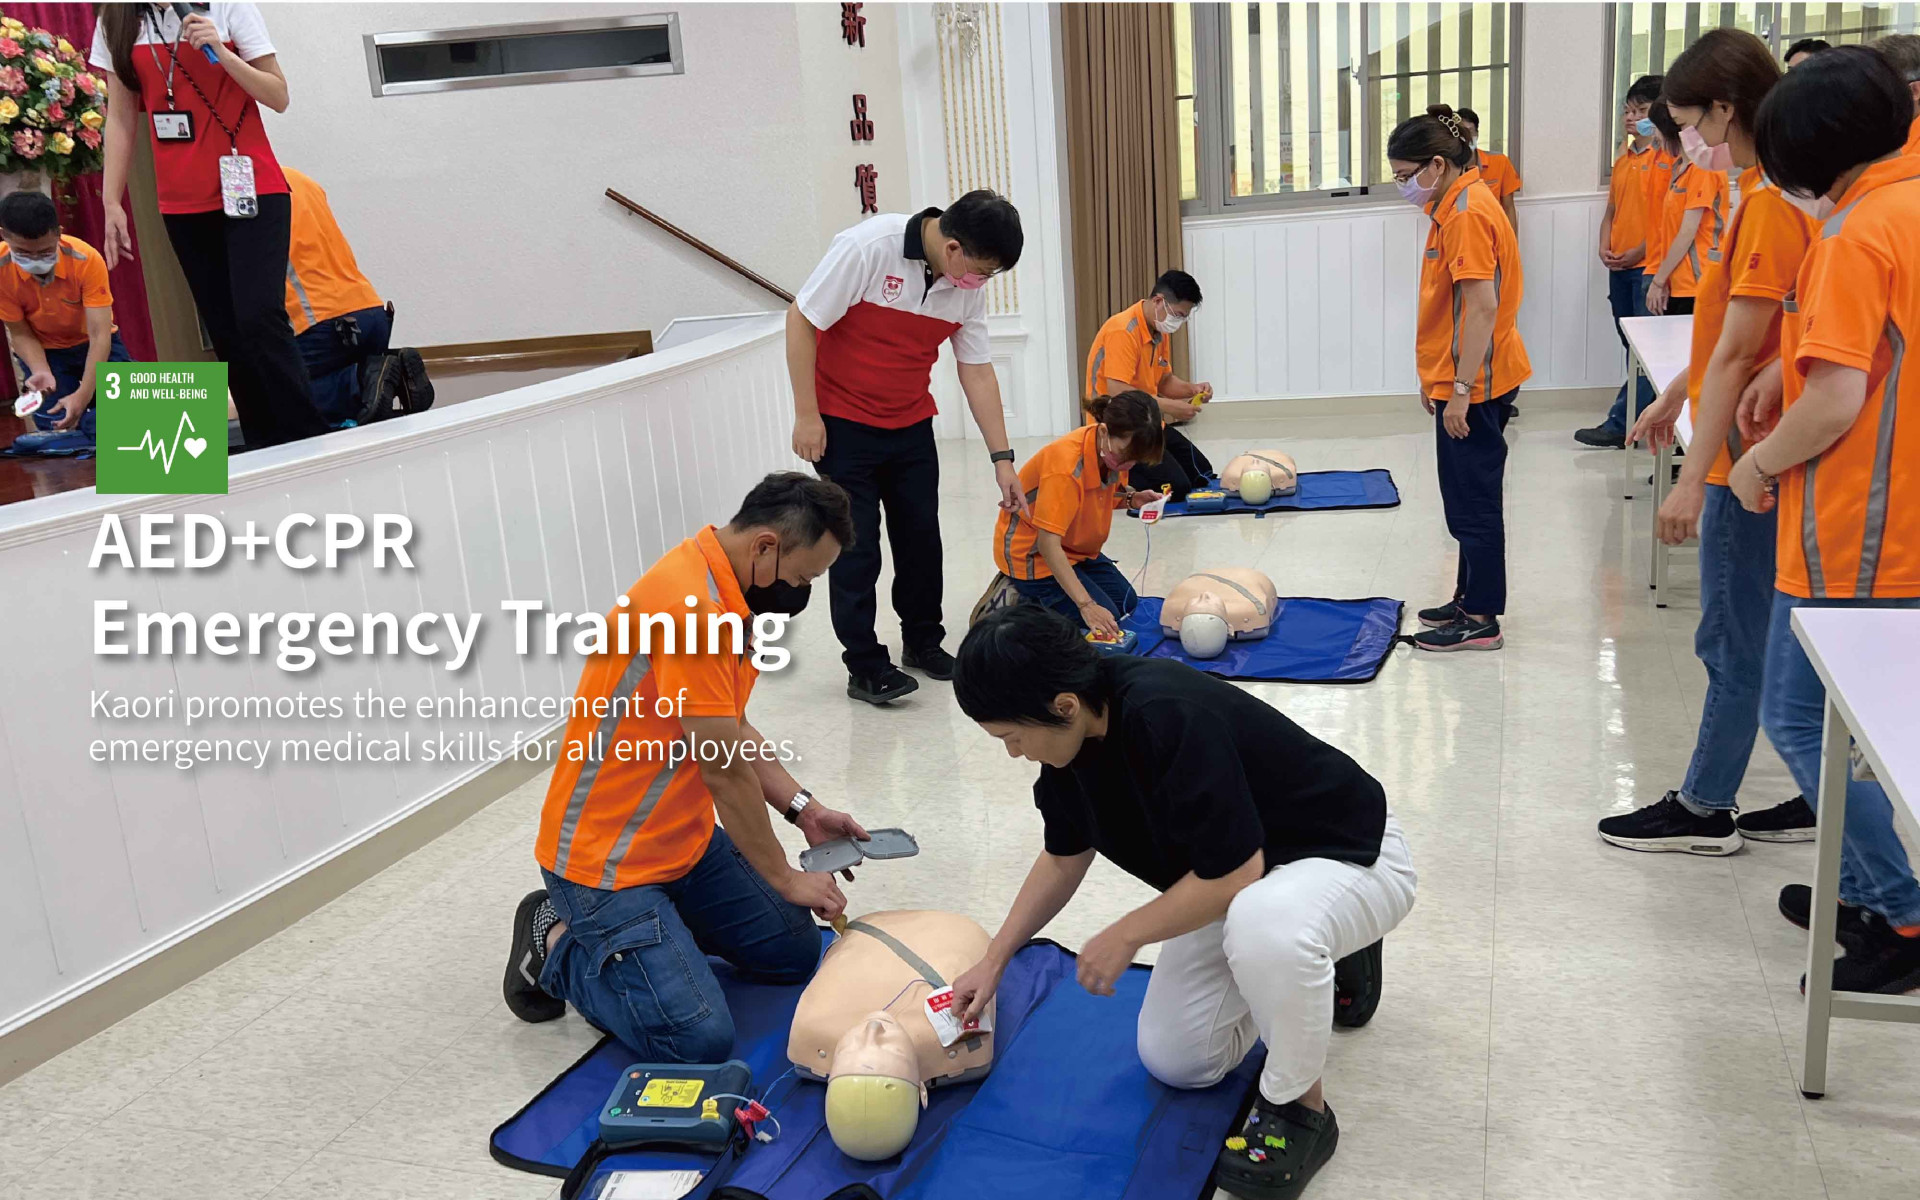 提升緊急救護技能高力推動全員CPR+AED訓練